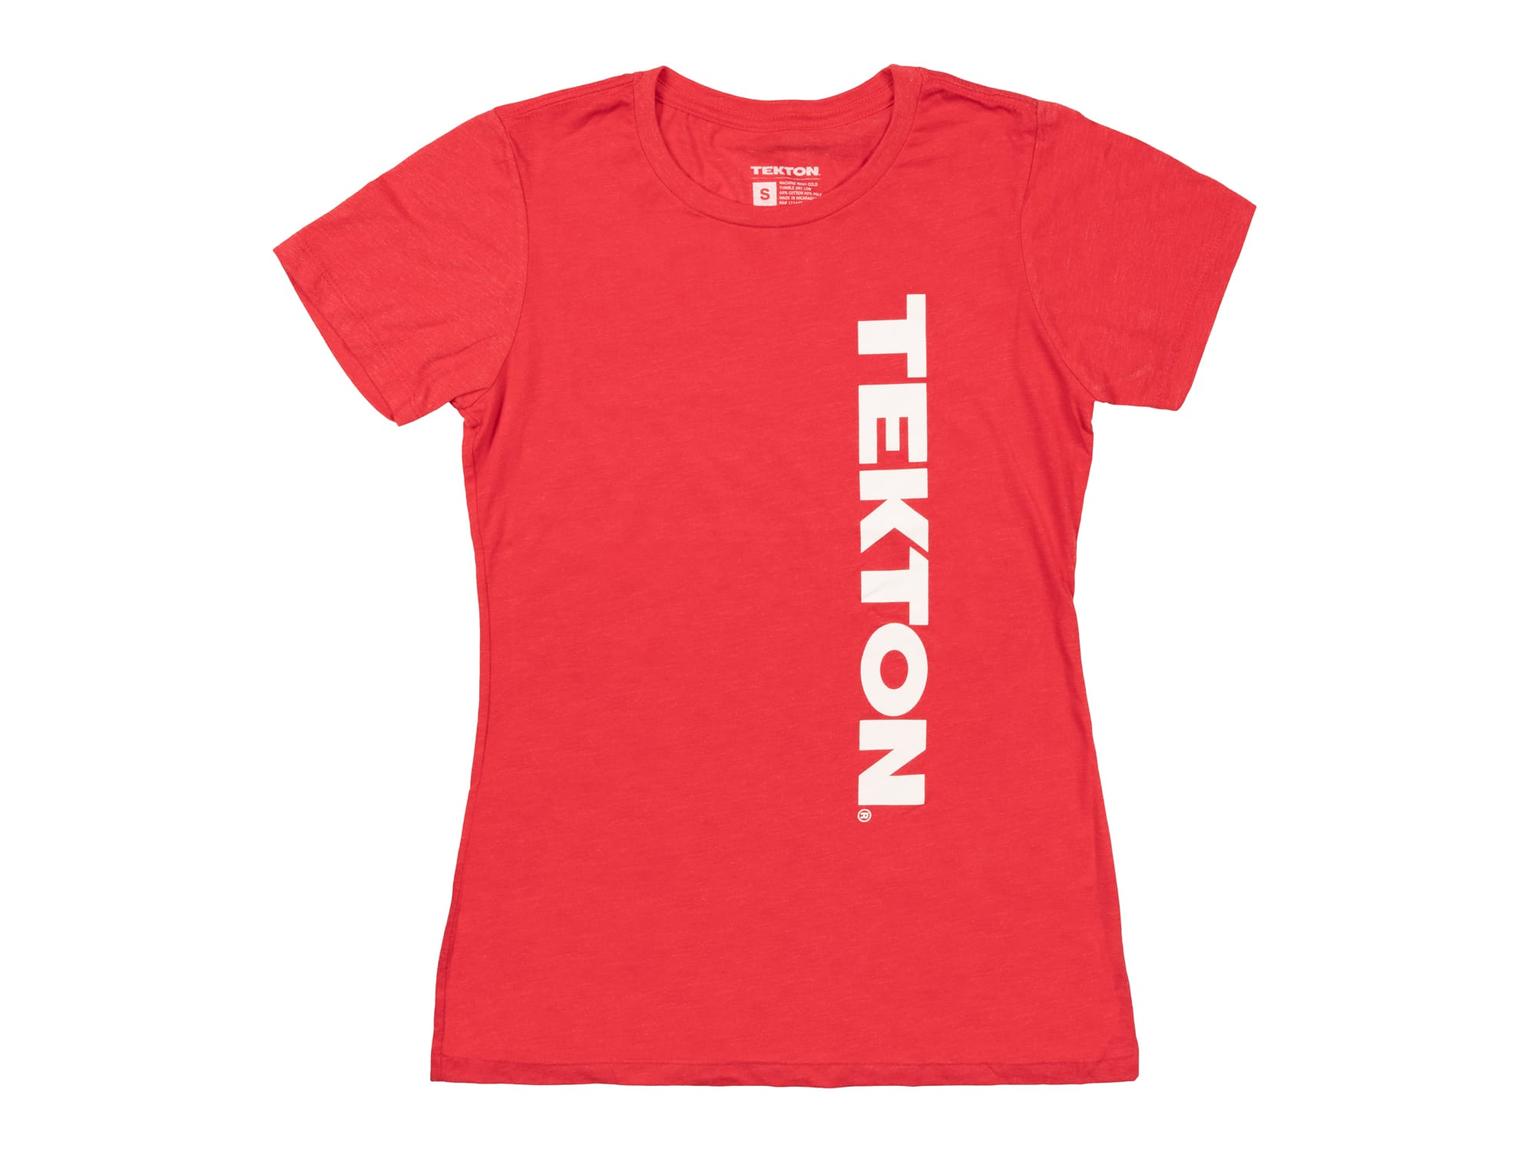 TEKTON APG32015 Tekton Women's T-Shirt, Red (S)